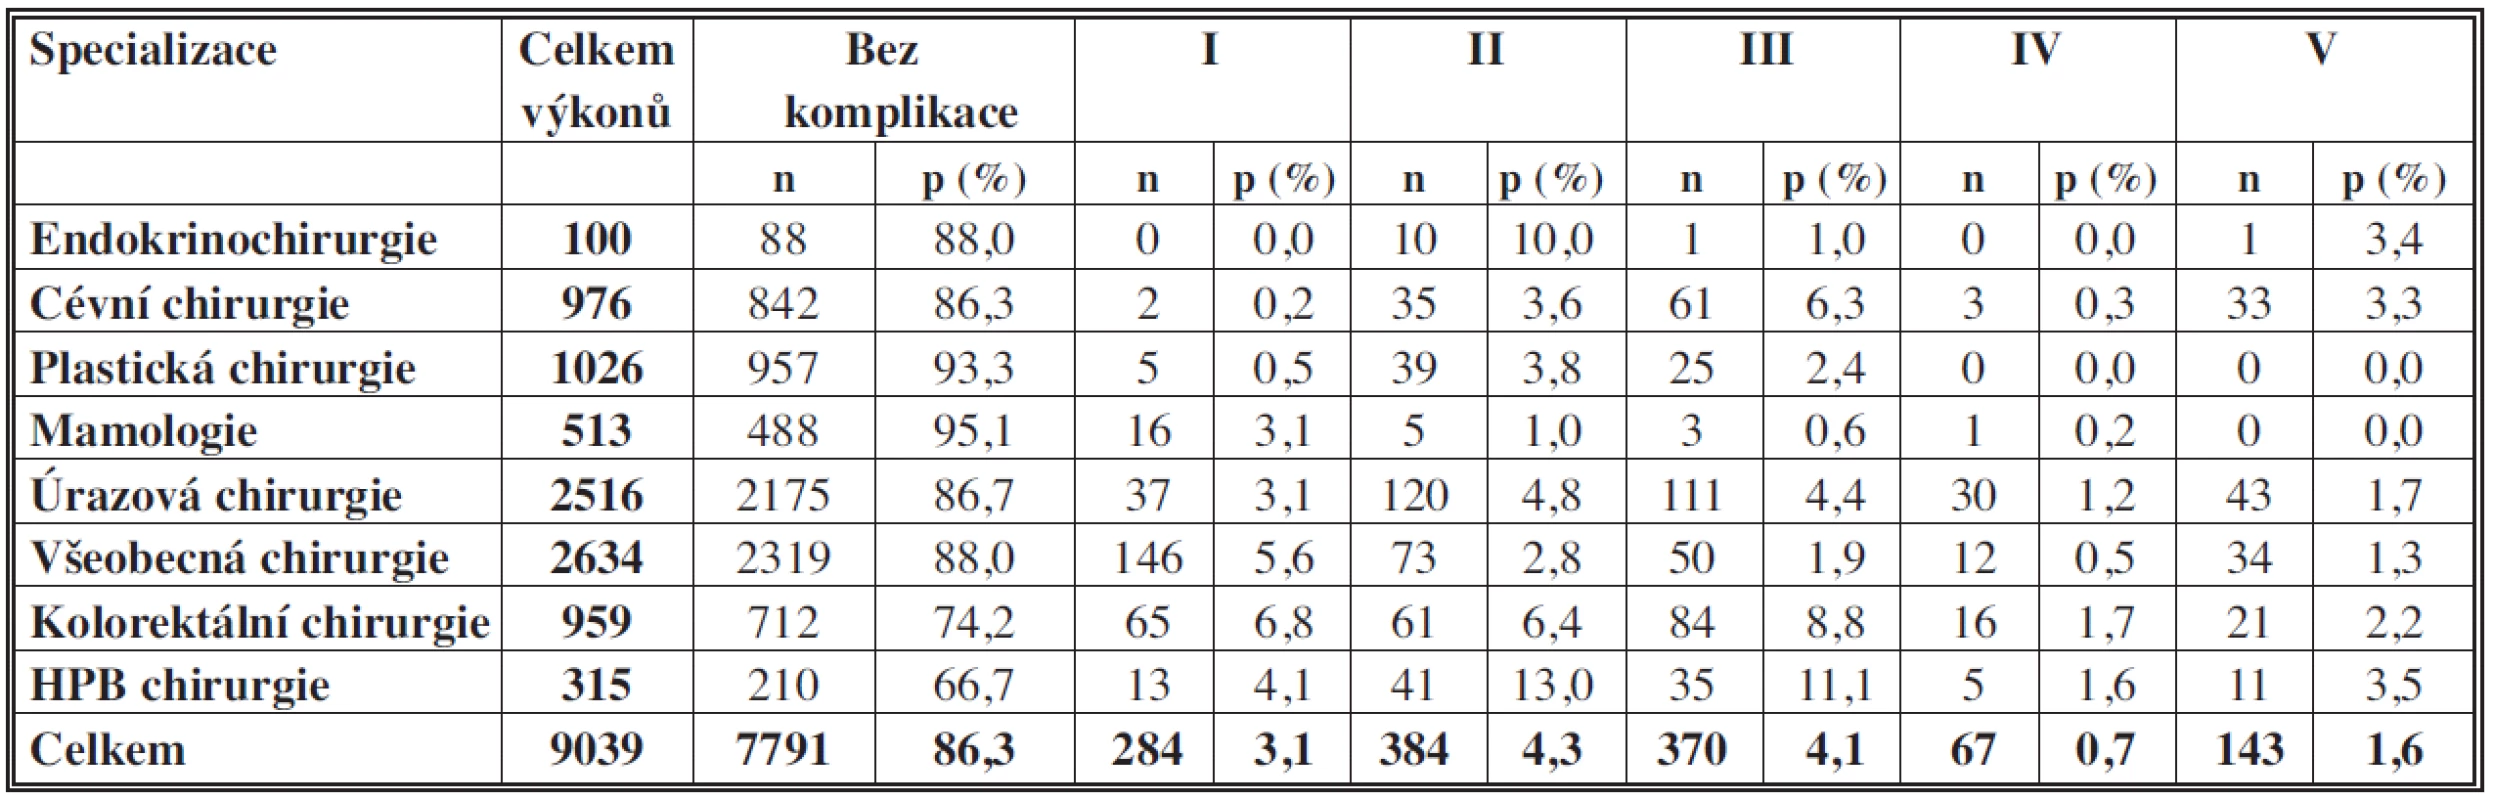 Spektrum jednotlivých komplikací podle specializací
Tab. 2: Spectrum of complications according to a specialization